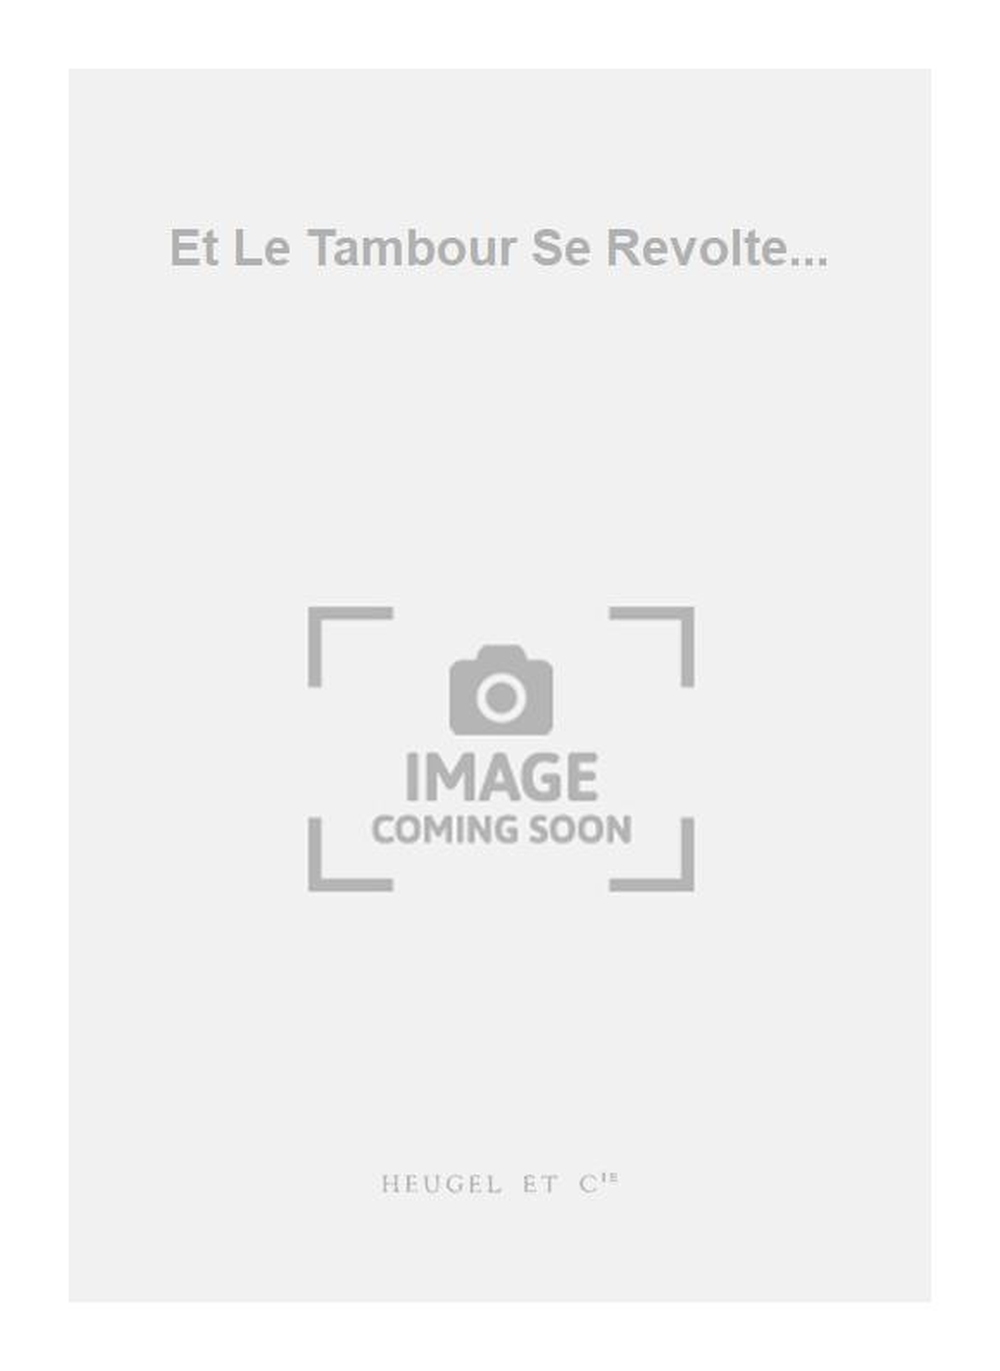 Yves Callier: Et Le Tambour Se Revolte...